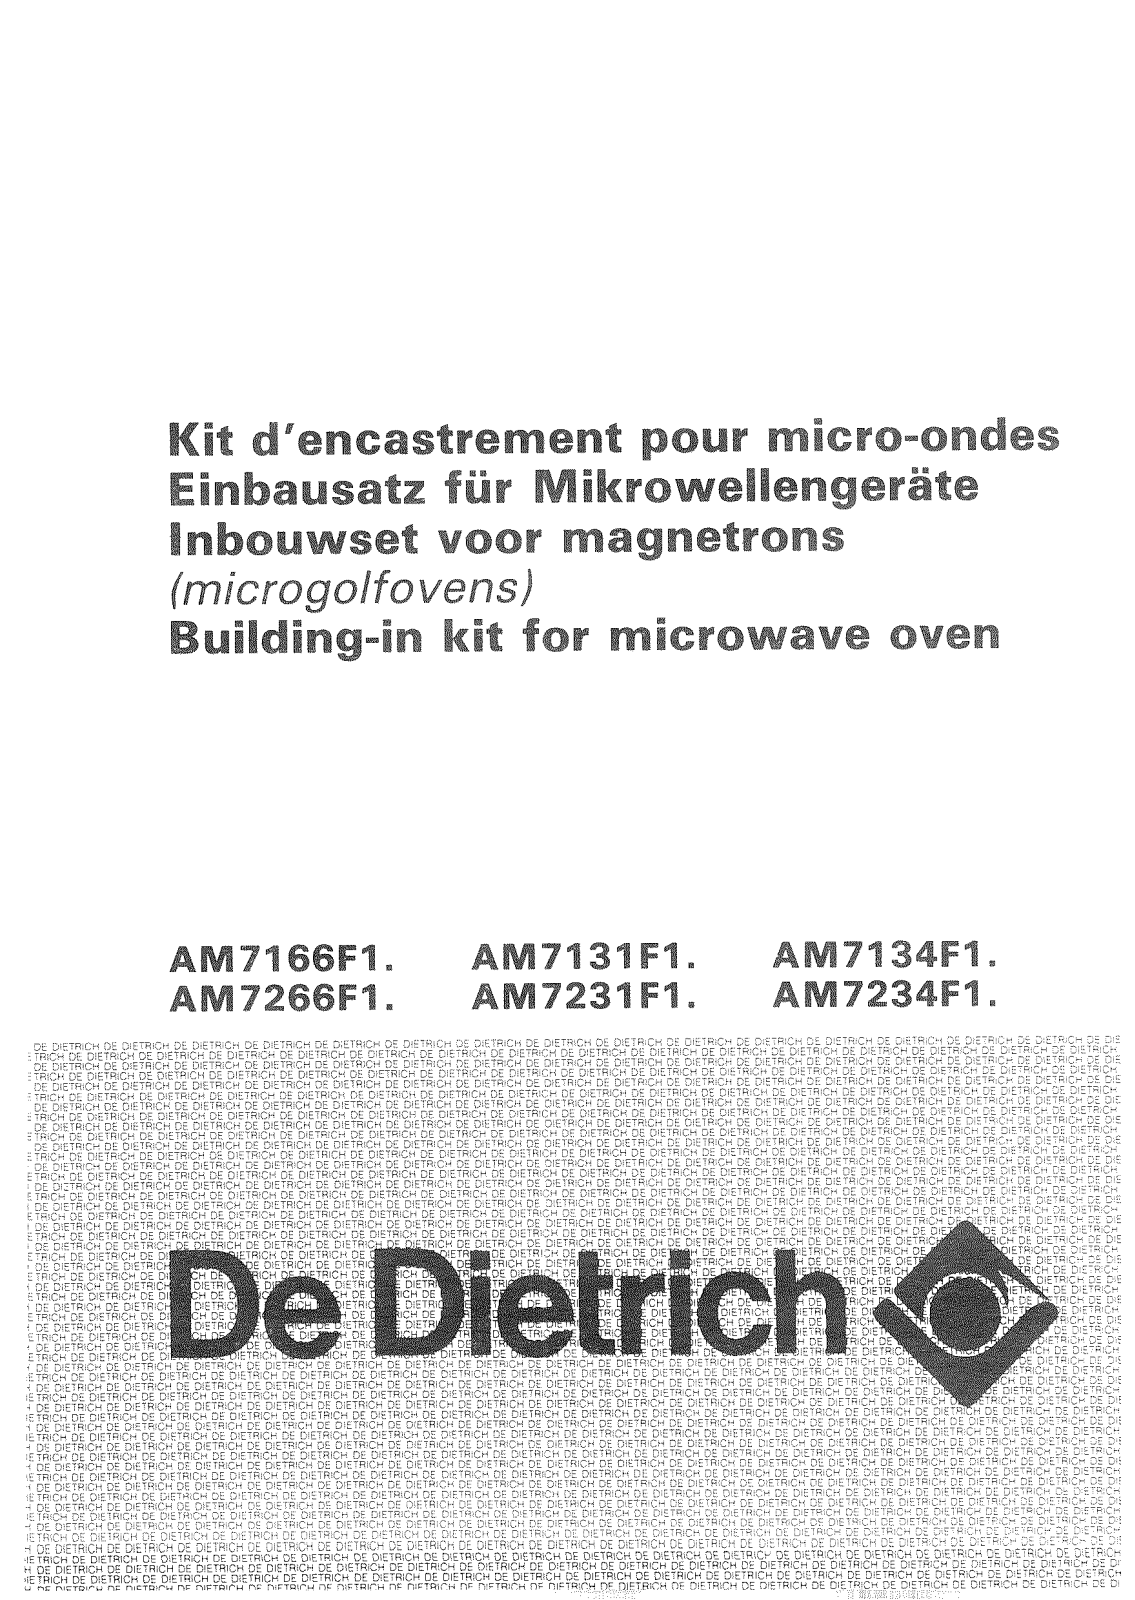 De dietrich AM7266F1, AM7234F1, AM7166F1, AM7134F1 User Manual